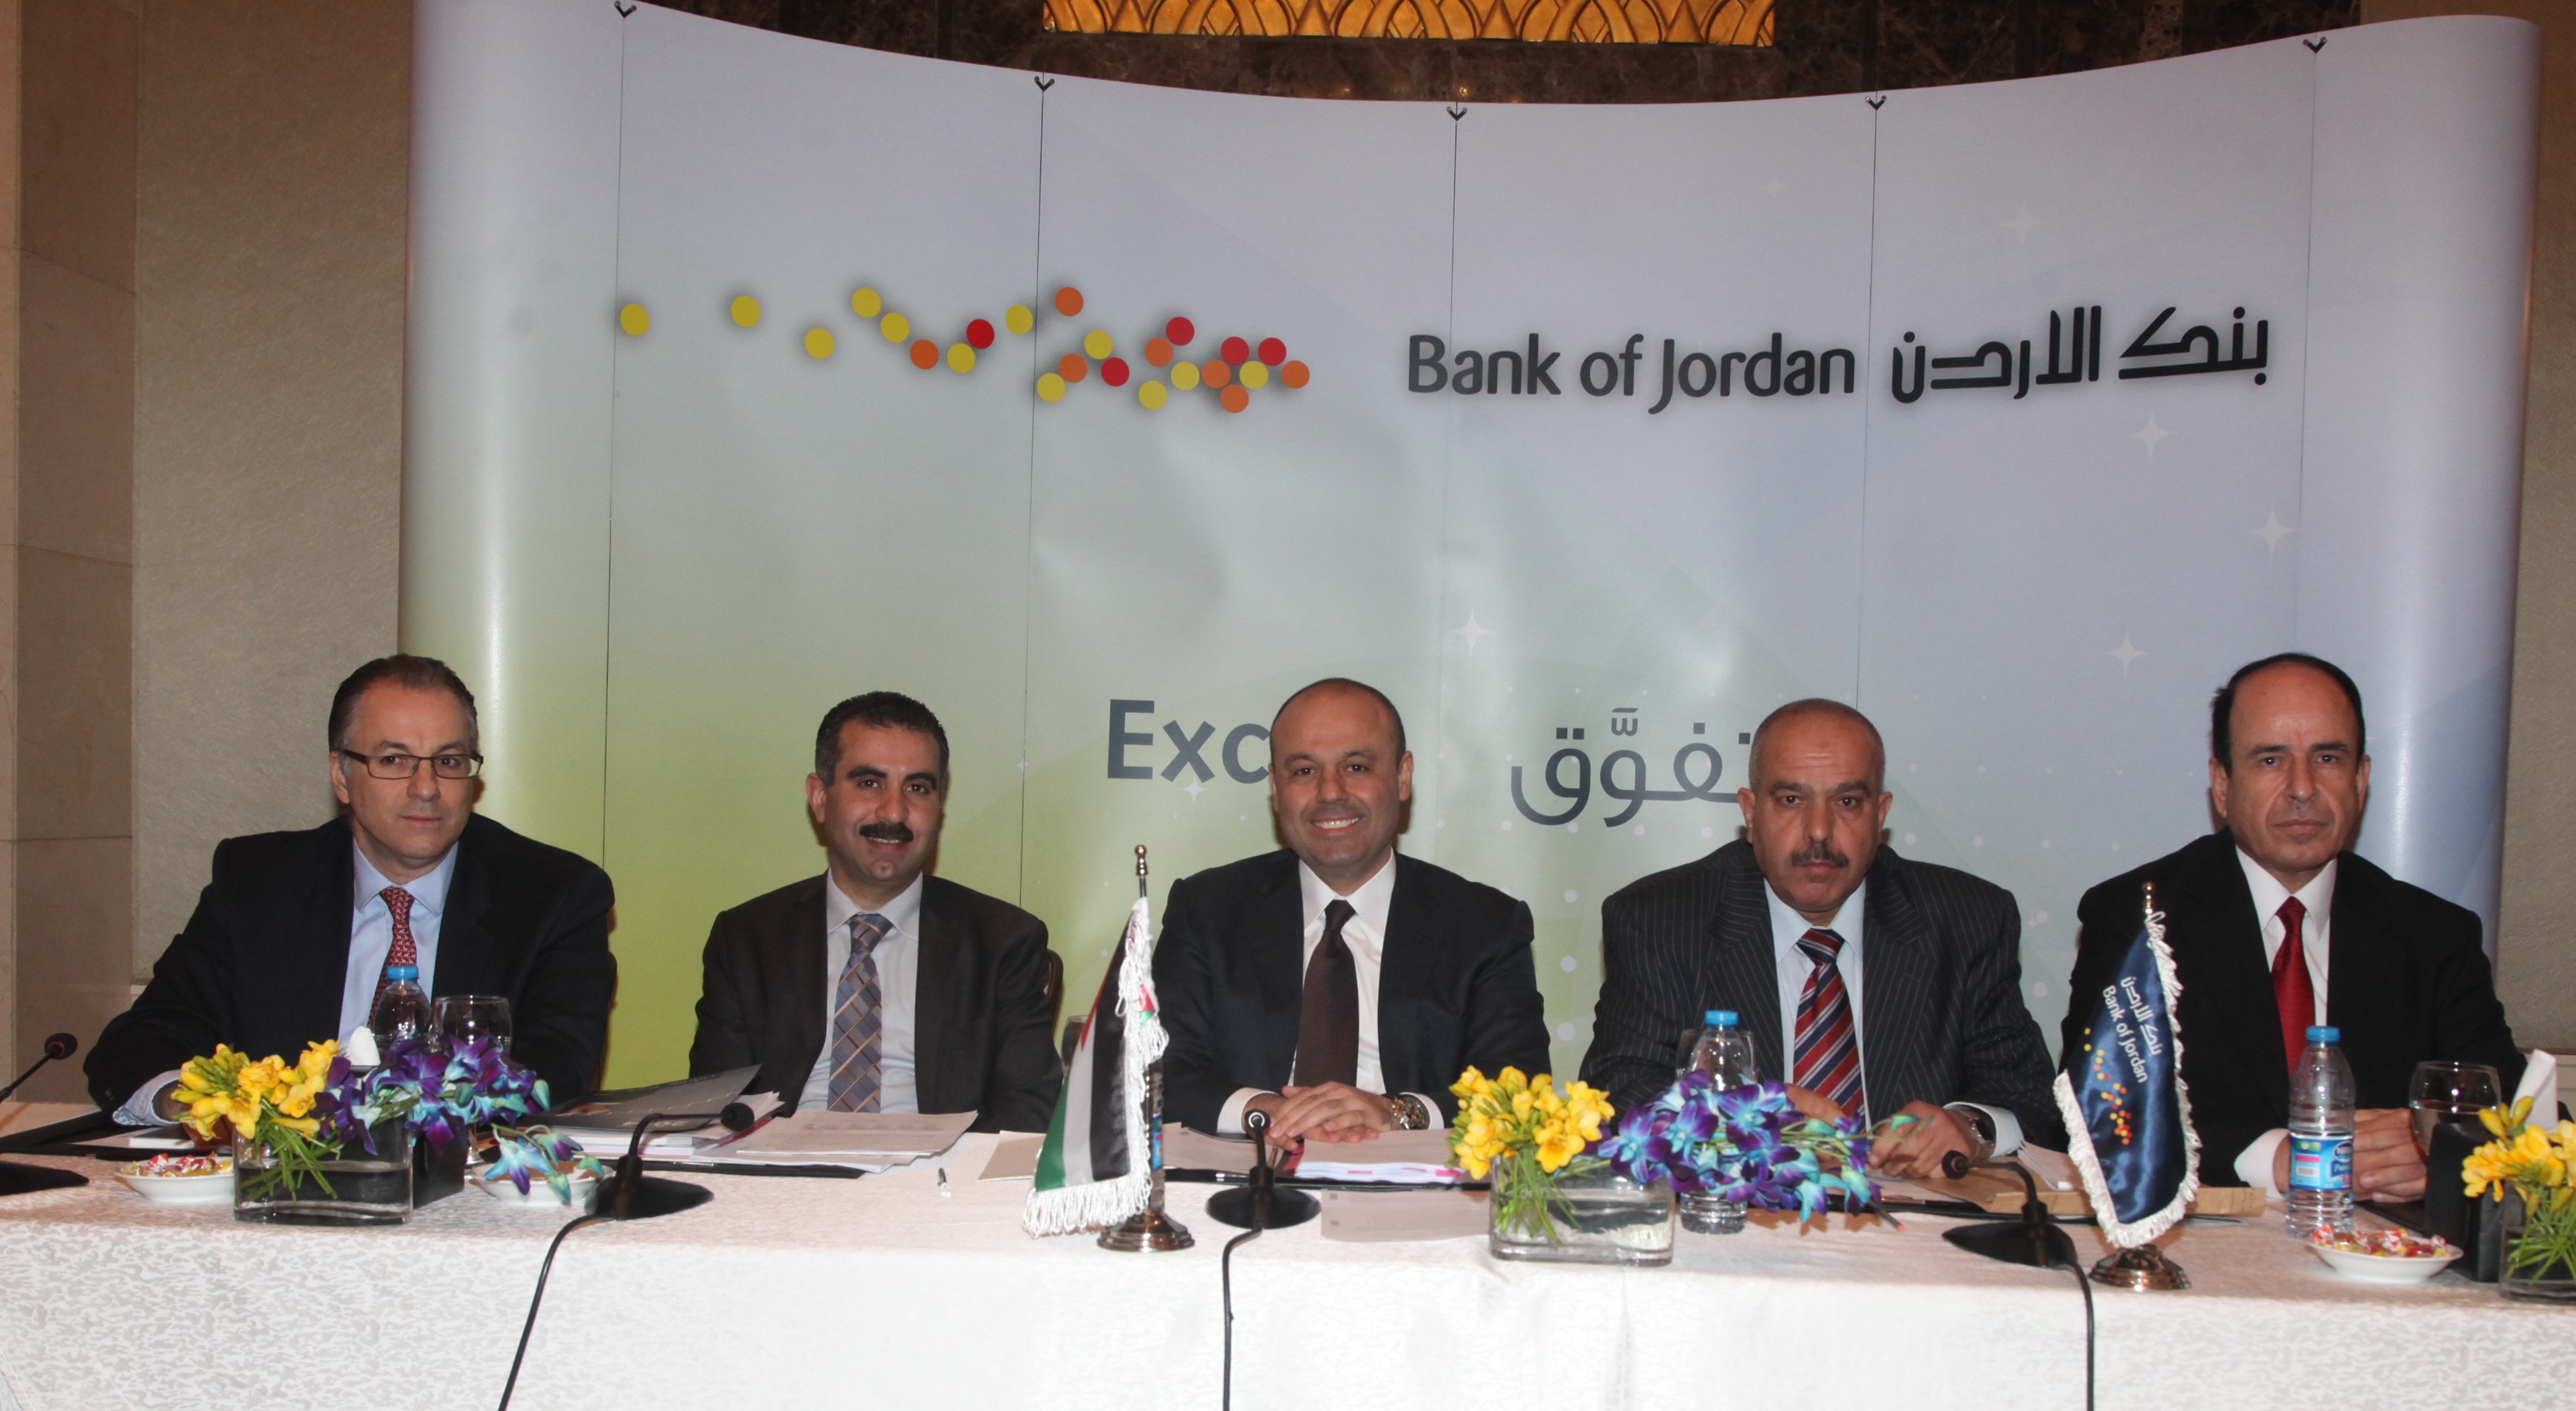 الهيئة العامة لبنك الأردن تقر توزيع أرباح نقدية على المساهمين بنسبة 20% بمبلغ 31.02 مليون دينار 